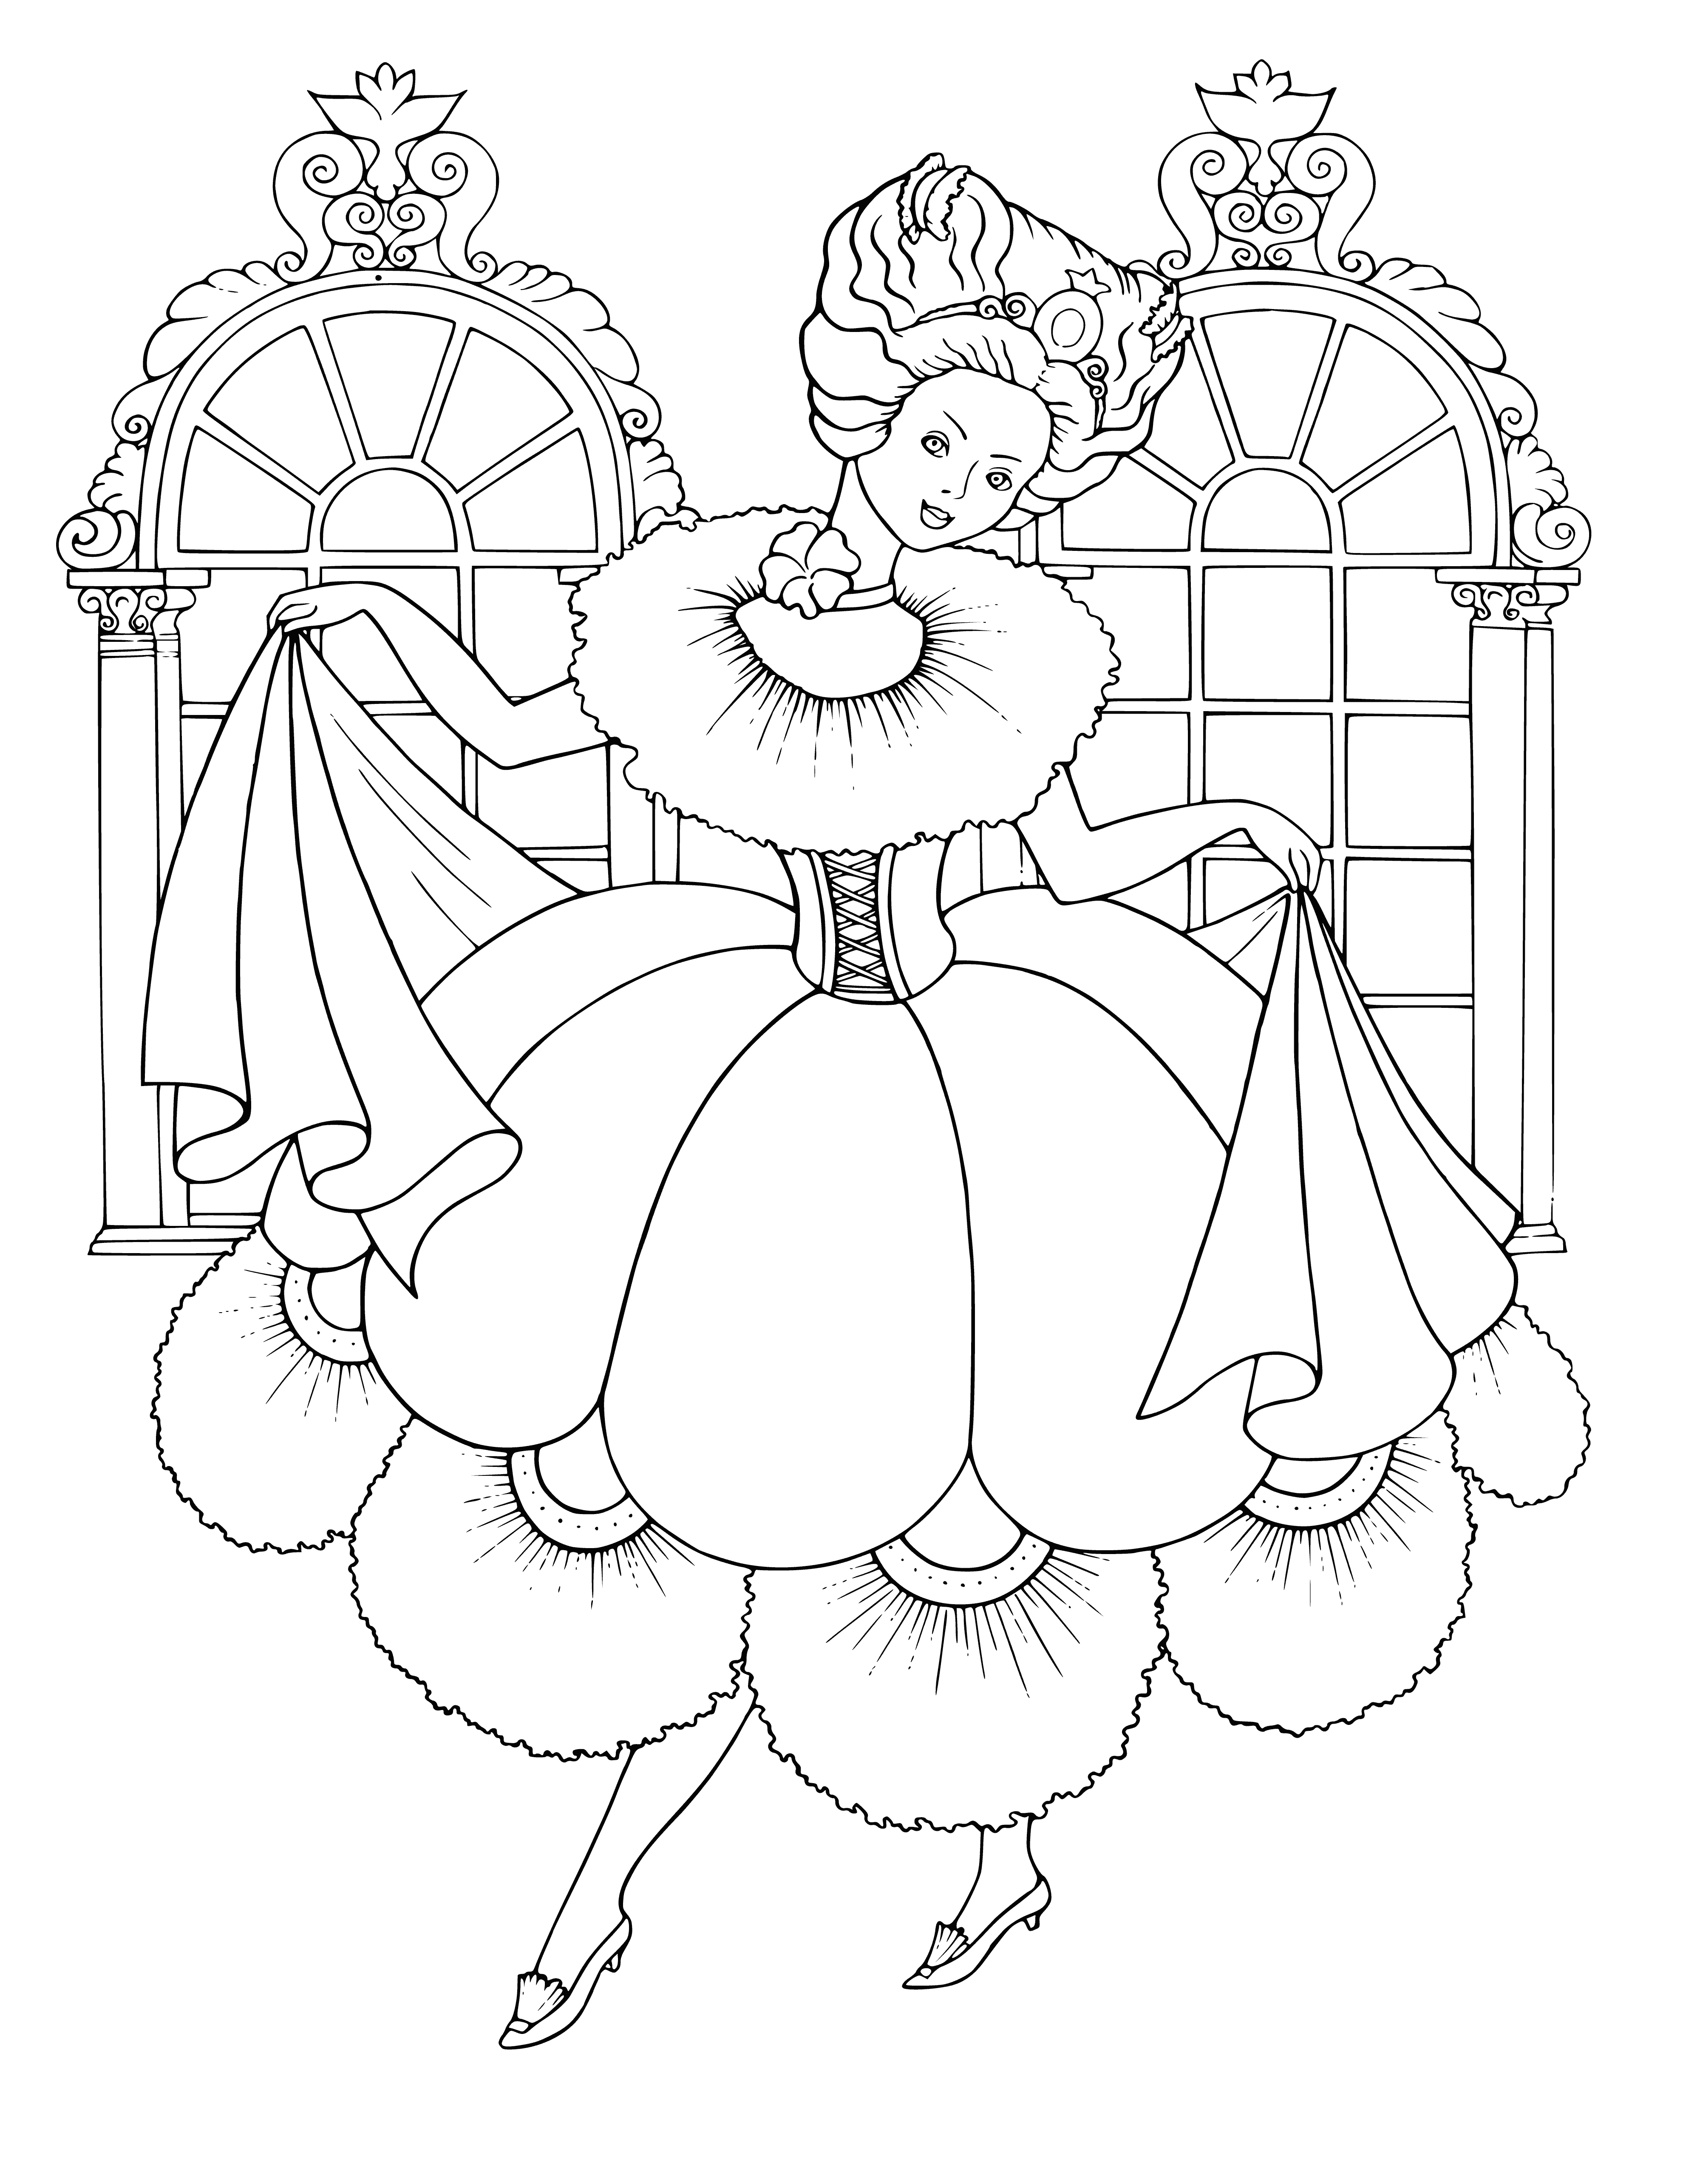 Princess at the ball coloring page